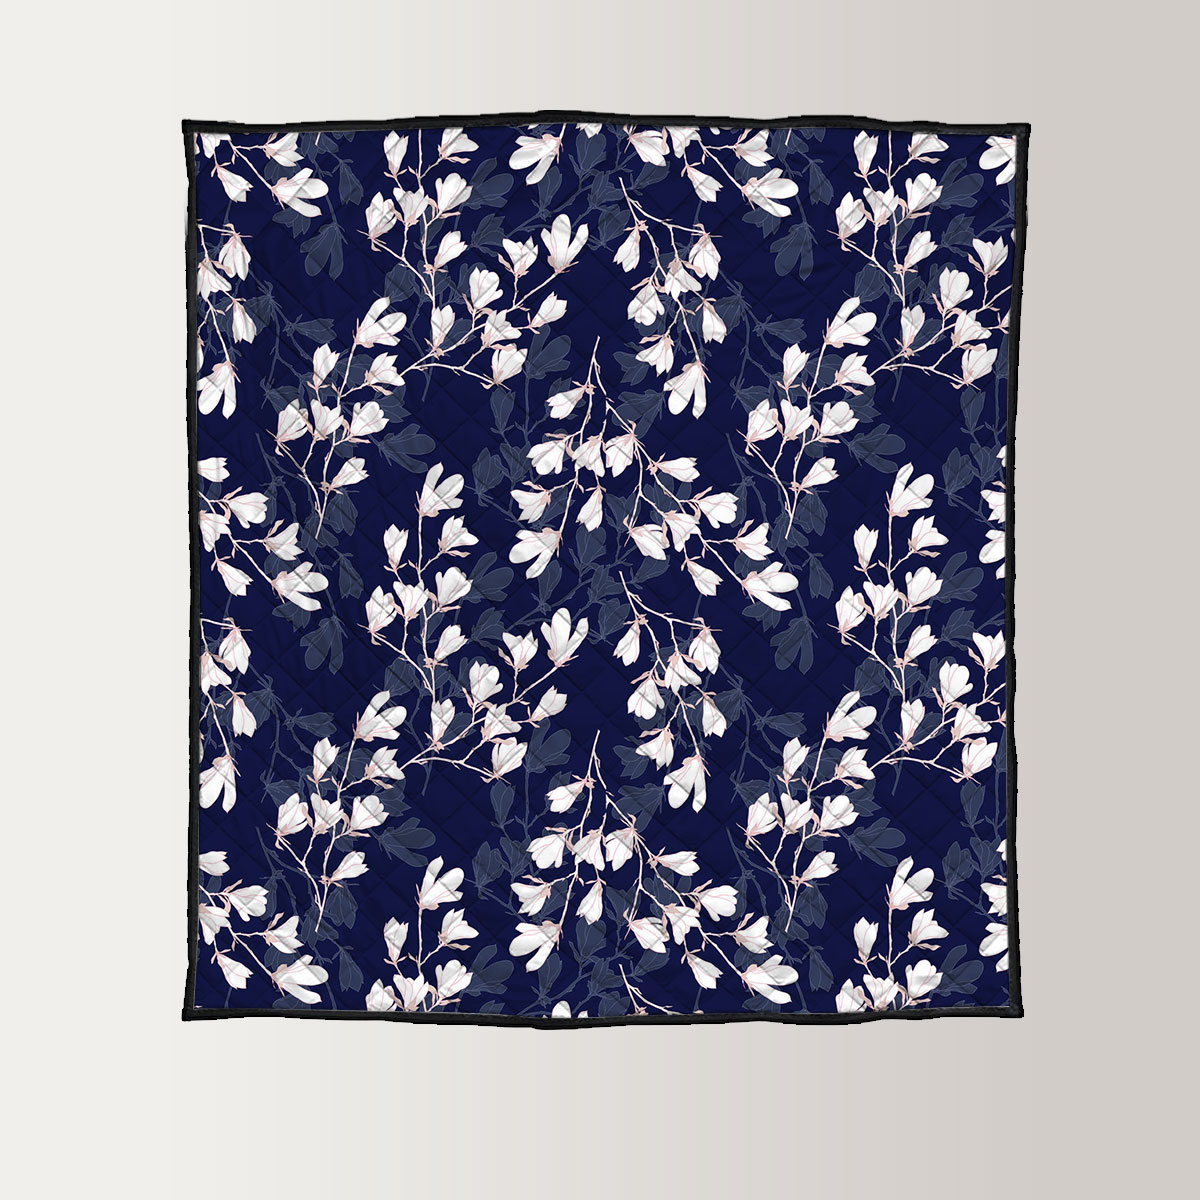 White Magnolia Flower On Dark Blue Background Quilt